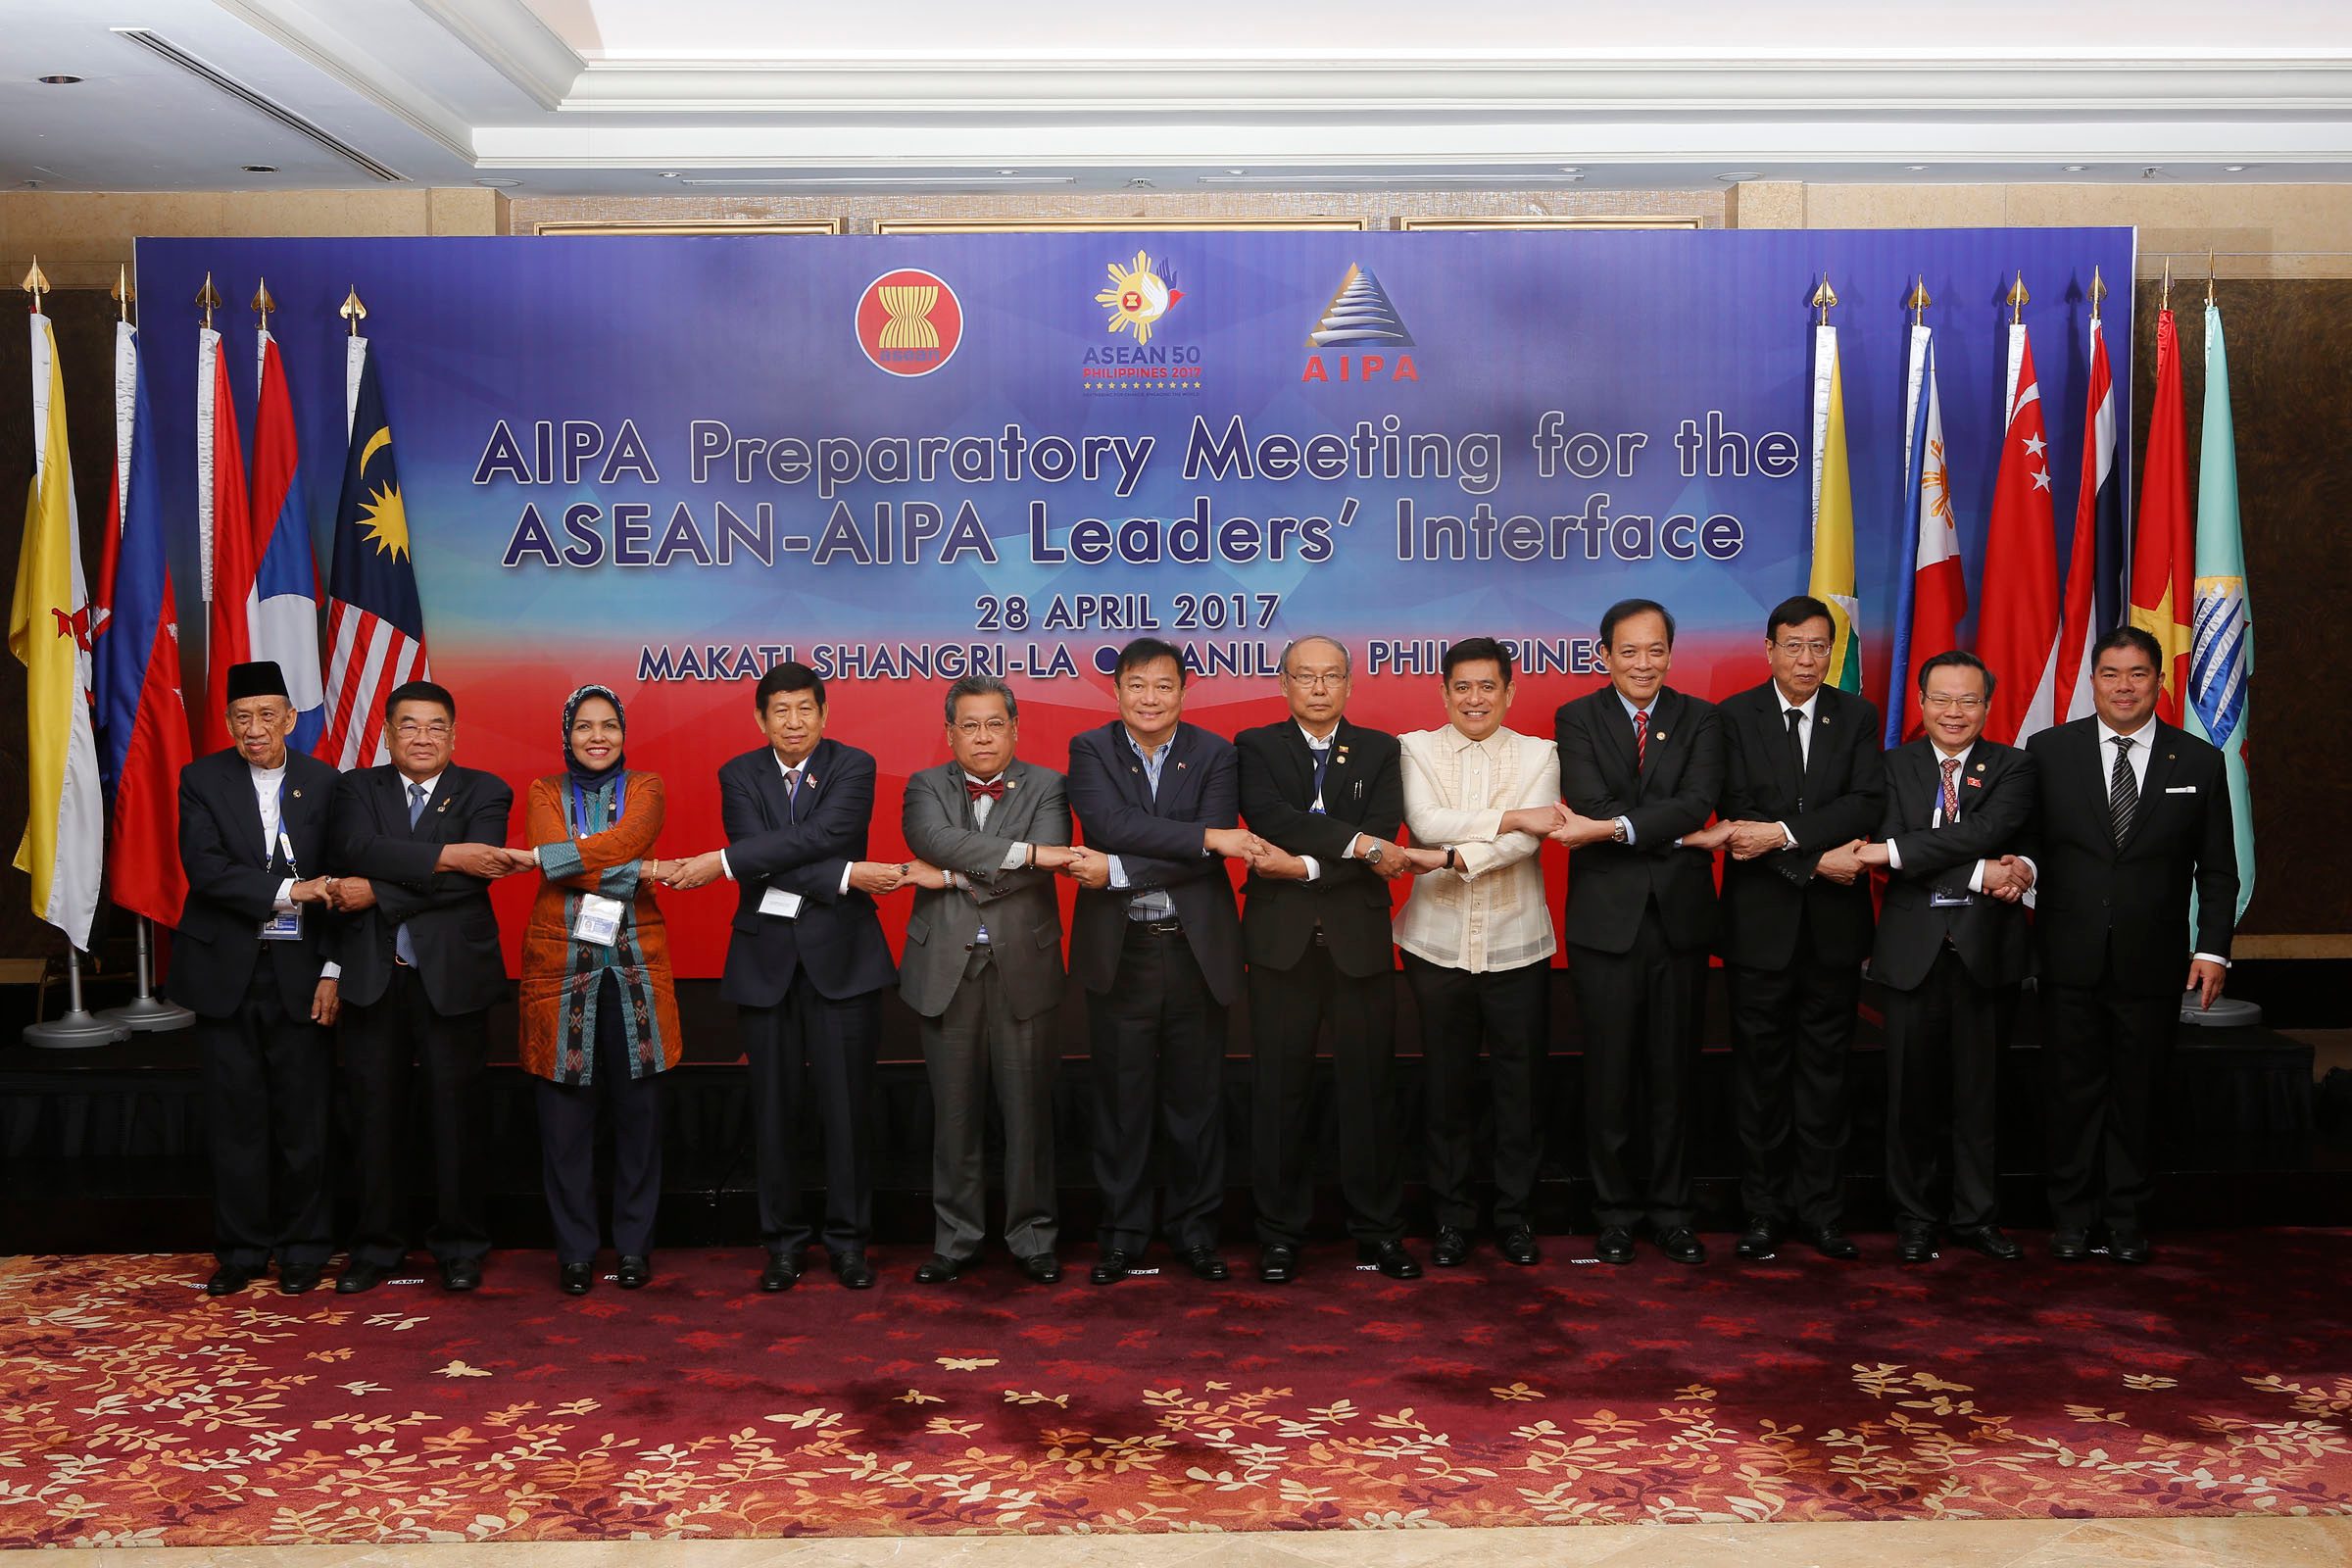 Anggota parlemen ASEAN menyerukan solusi ‘damai’ terhadap sengketa maritim